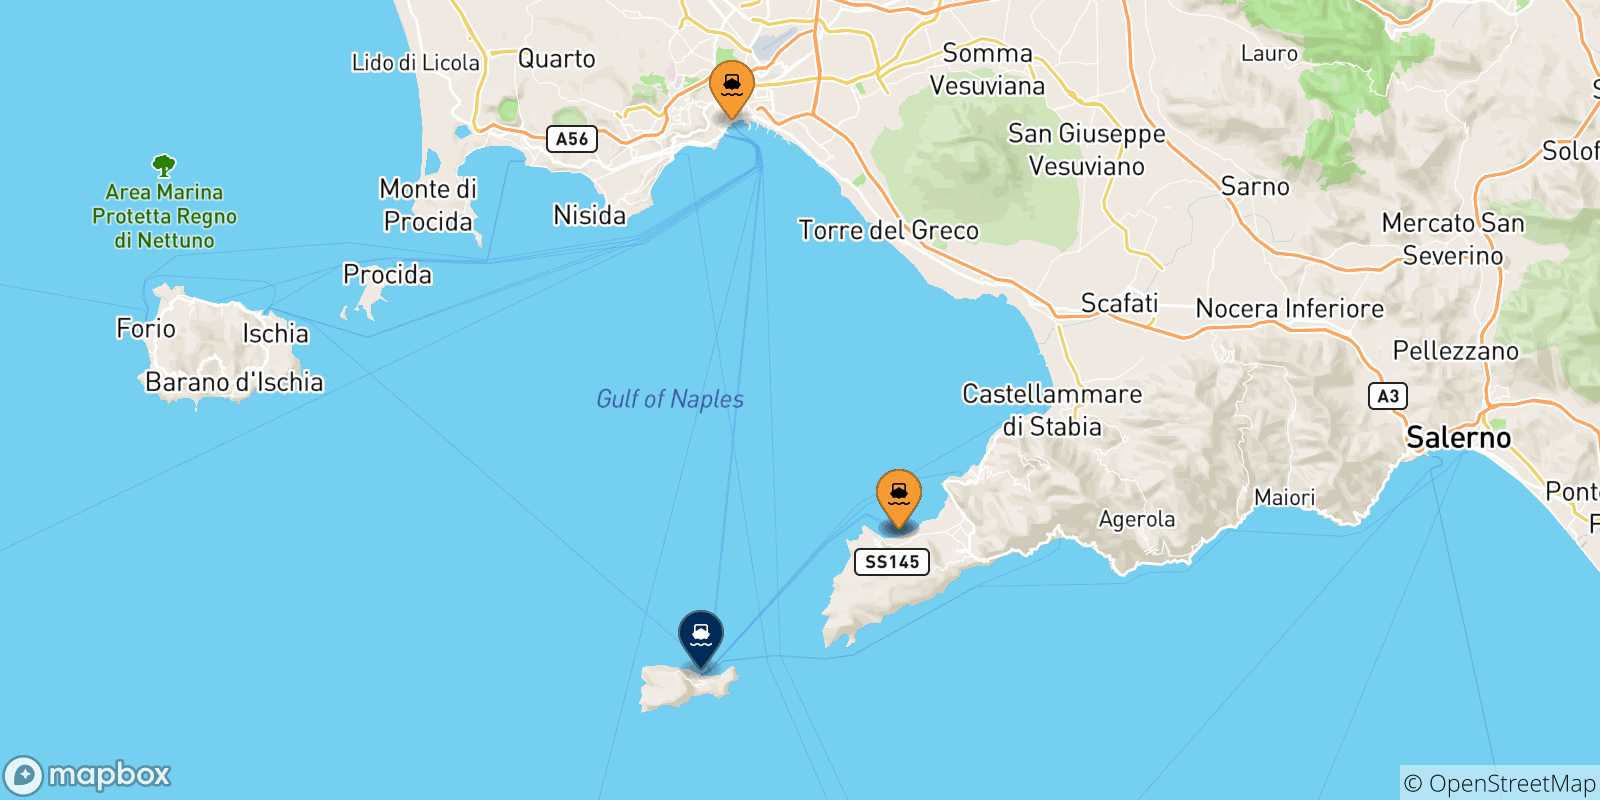 Mappa delle possibili rotte tra l'Italia e Capri